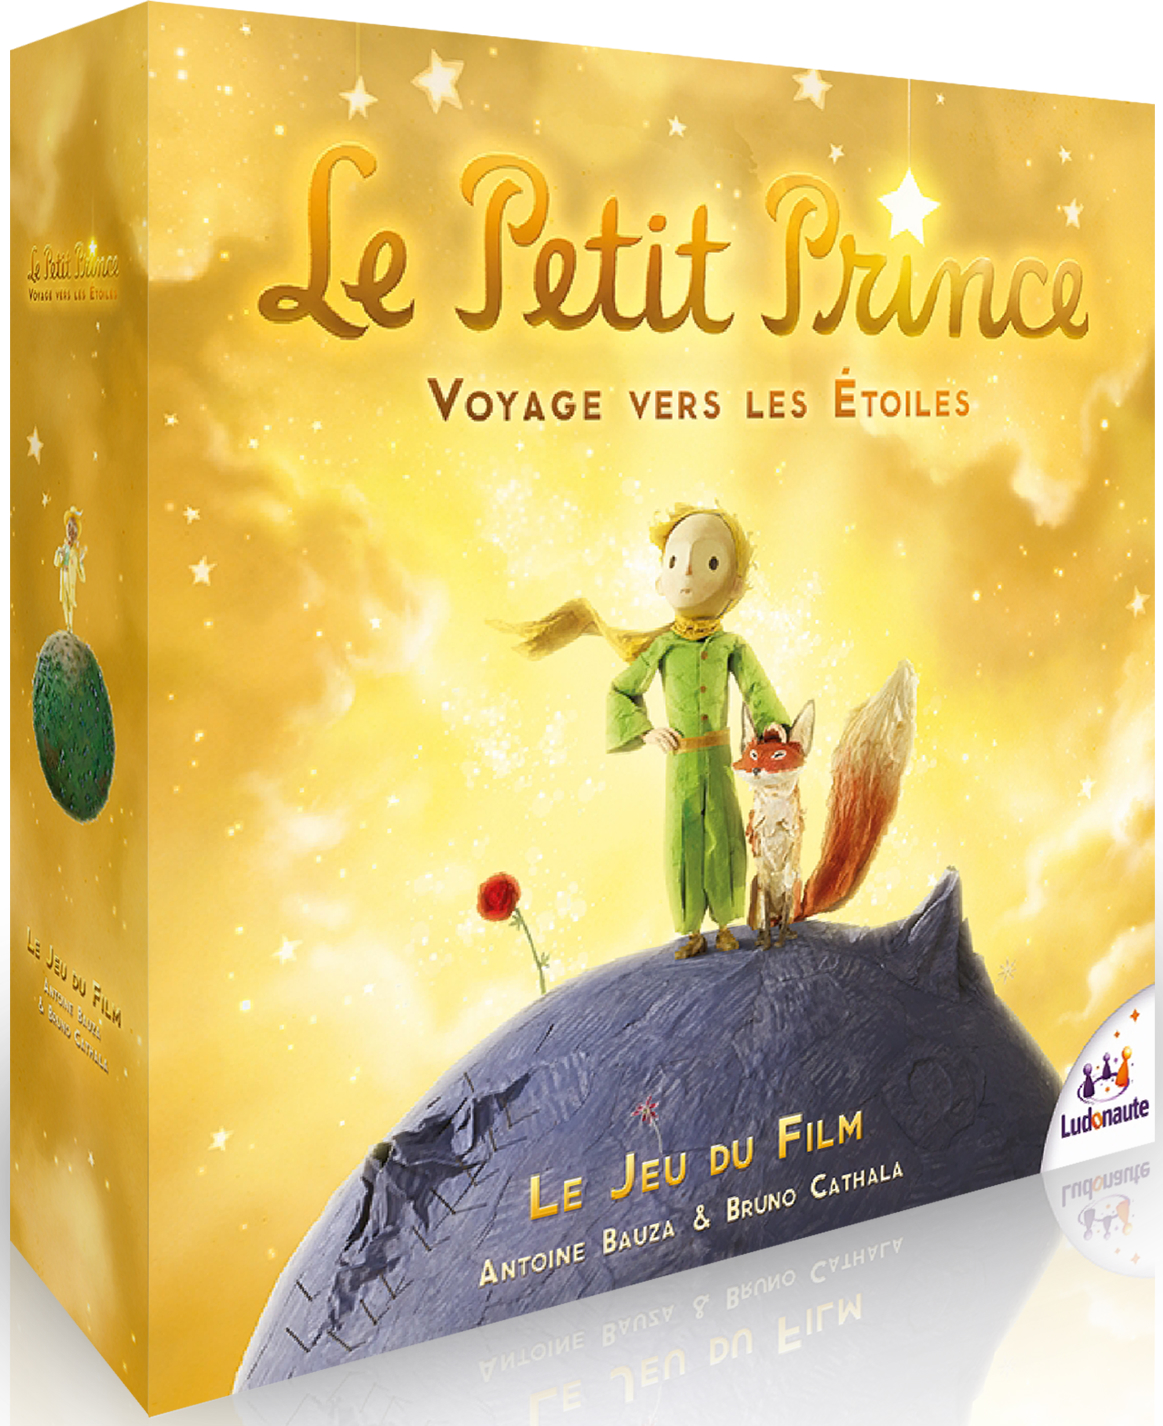 Linkto : Voyage - LilloJEUX - Boutique de jeux de société québécoise